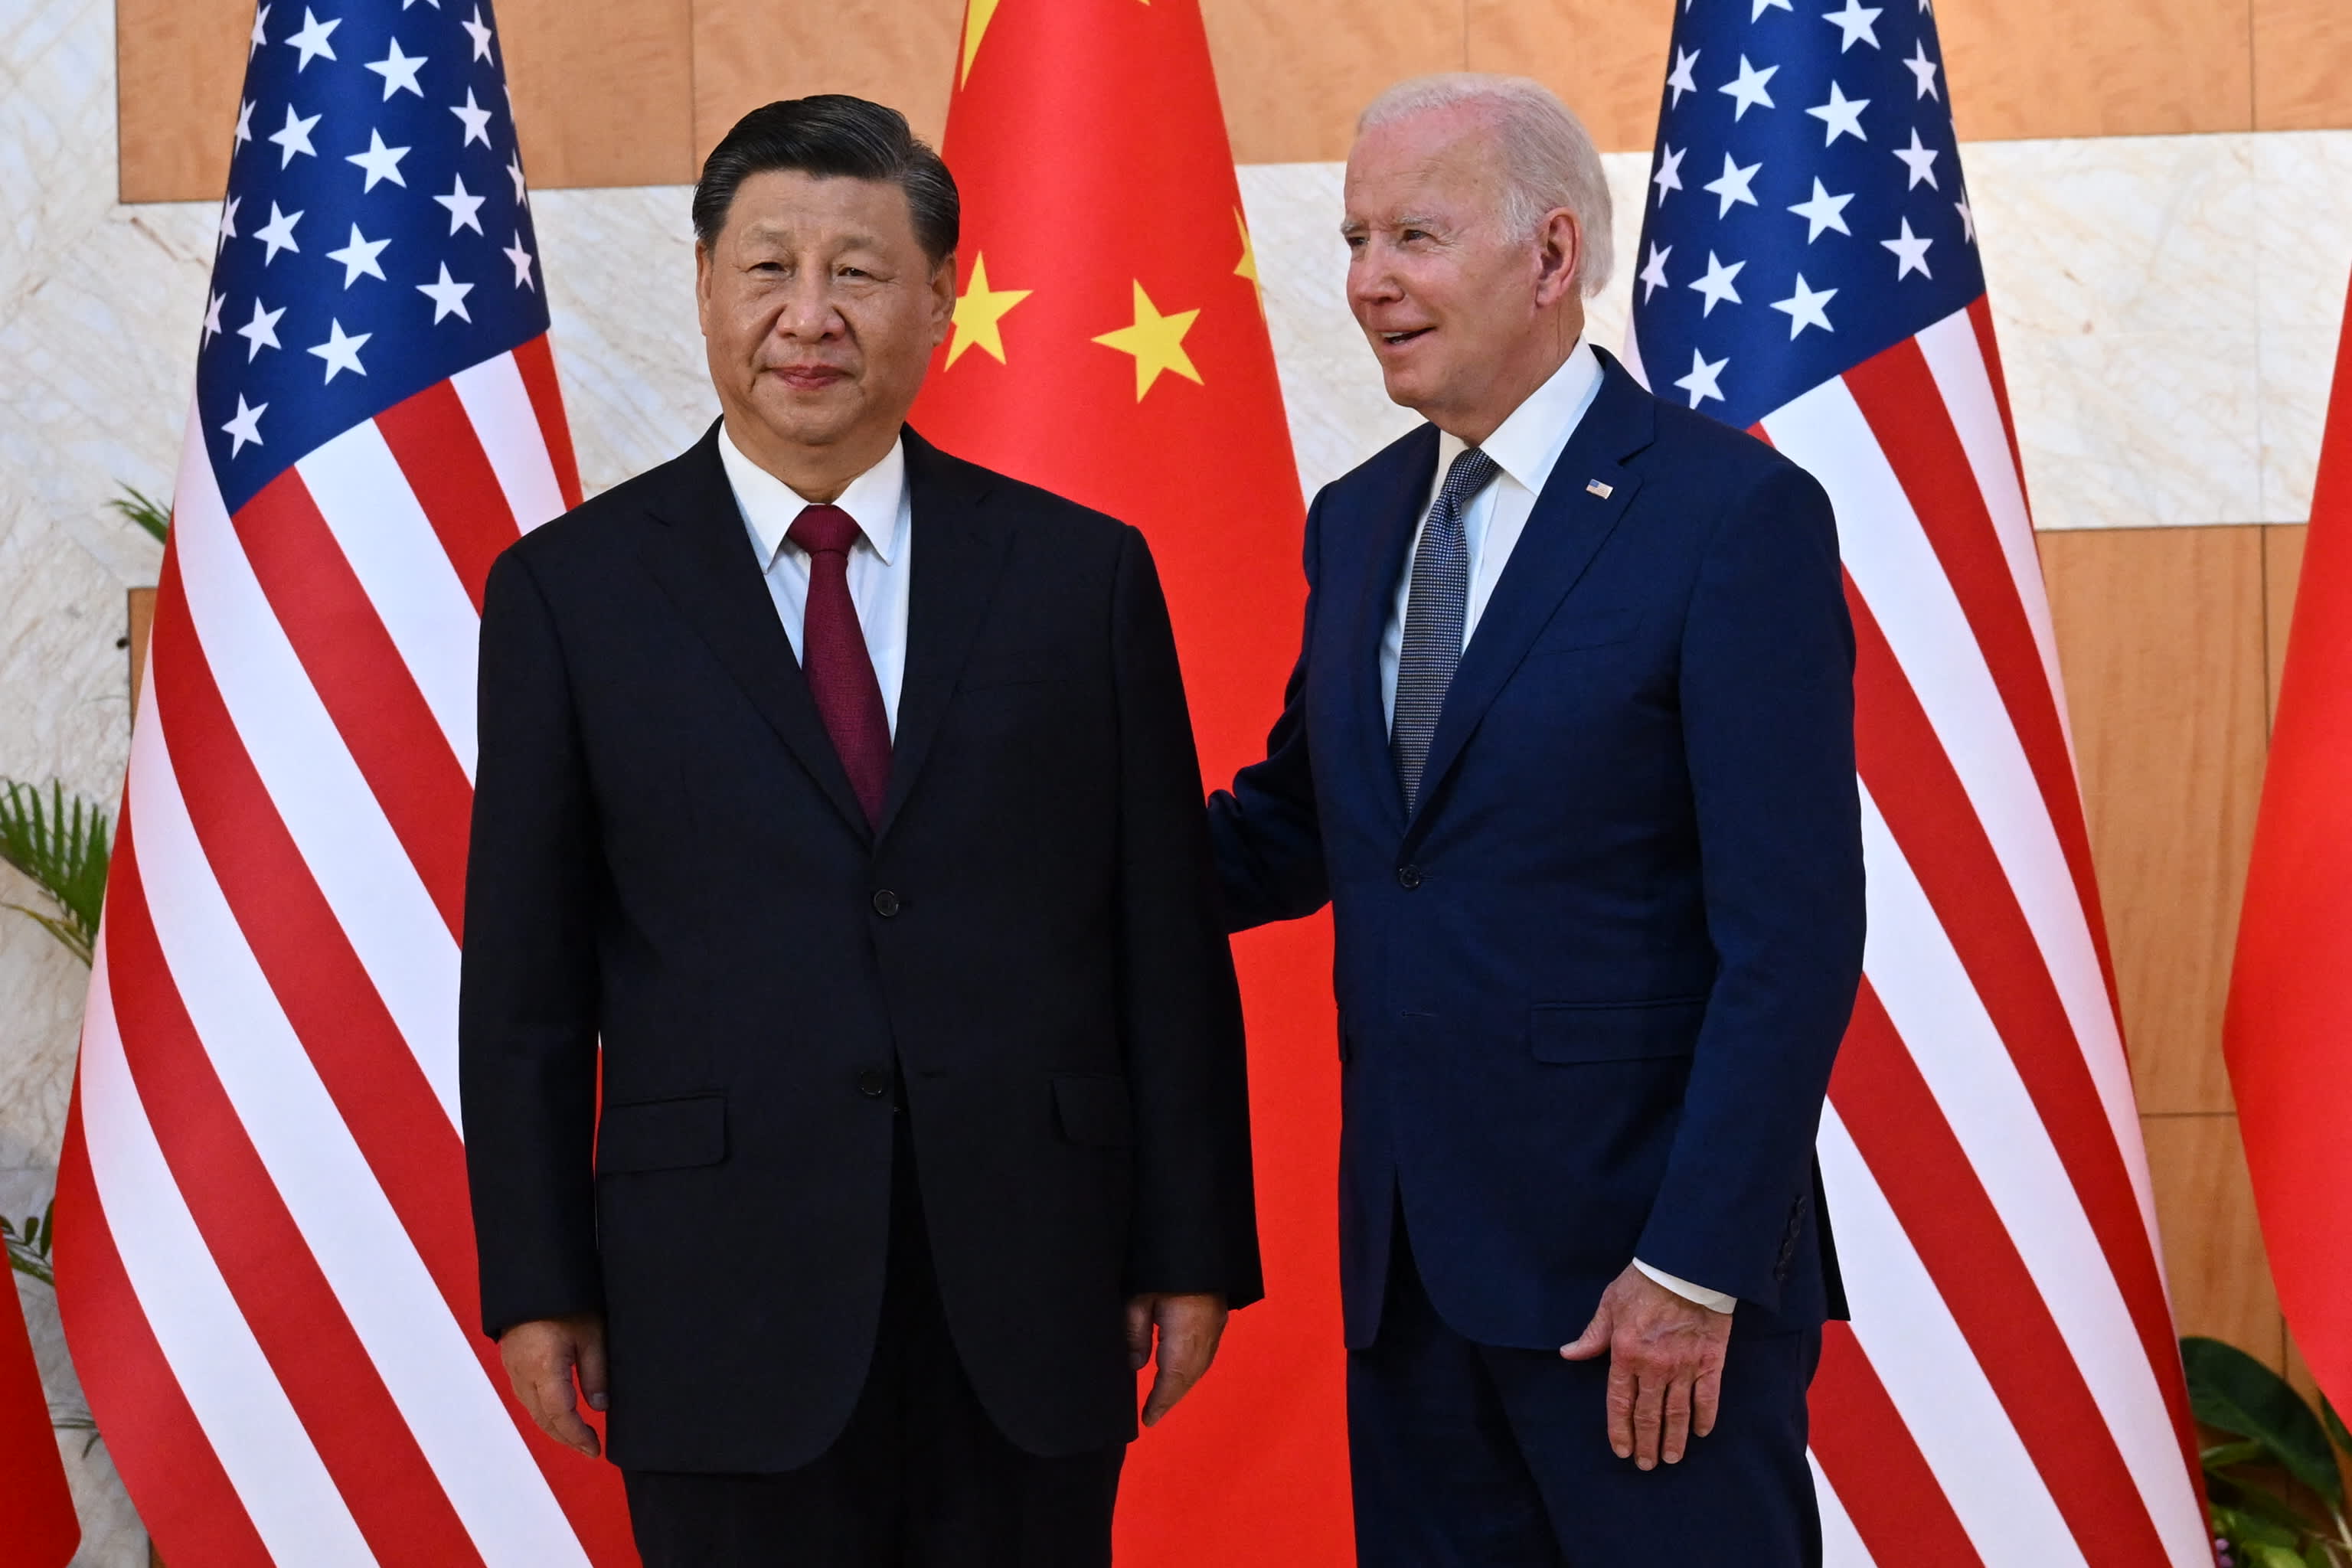 Das Weiße Haus sagt, Biden werde sich nächsten Monat mit dem chinesischen Präsidenten Xi Jinping treffen